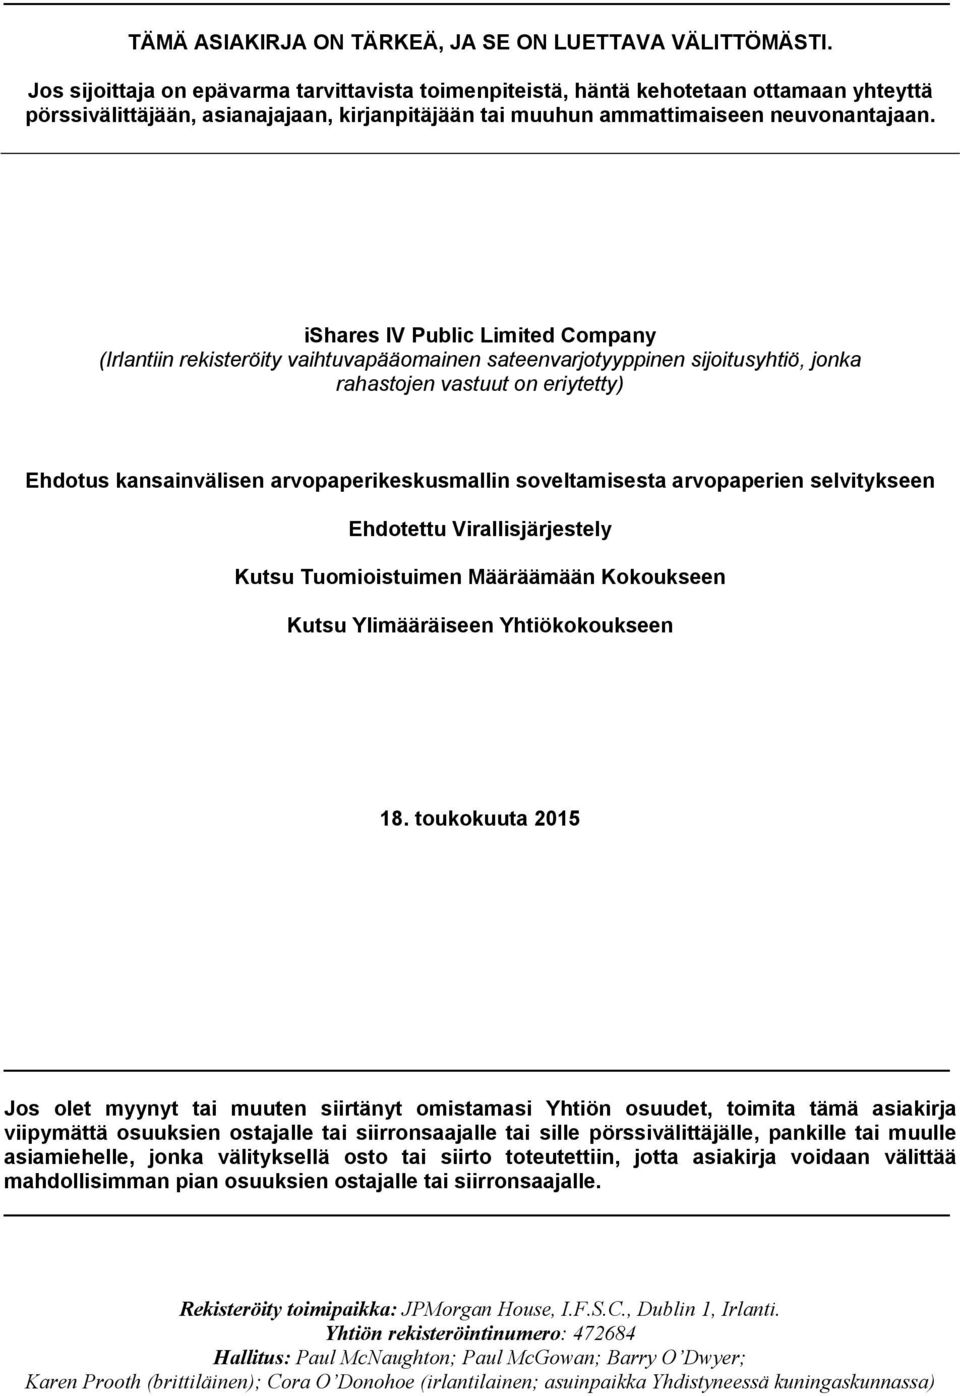 ishares IV Public Limited Company (Irlantiin rekisteröity vaihtuvapääomainen sateenvarjotyyppinen sijoitusyhtiö, jonka rahastojen vastuut on eriytetty) Ehdotus kansainvälisen arvopaperikeskusmallin